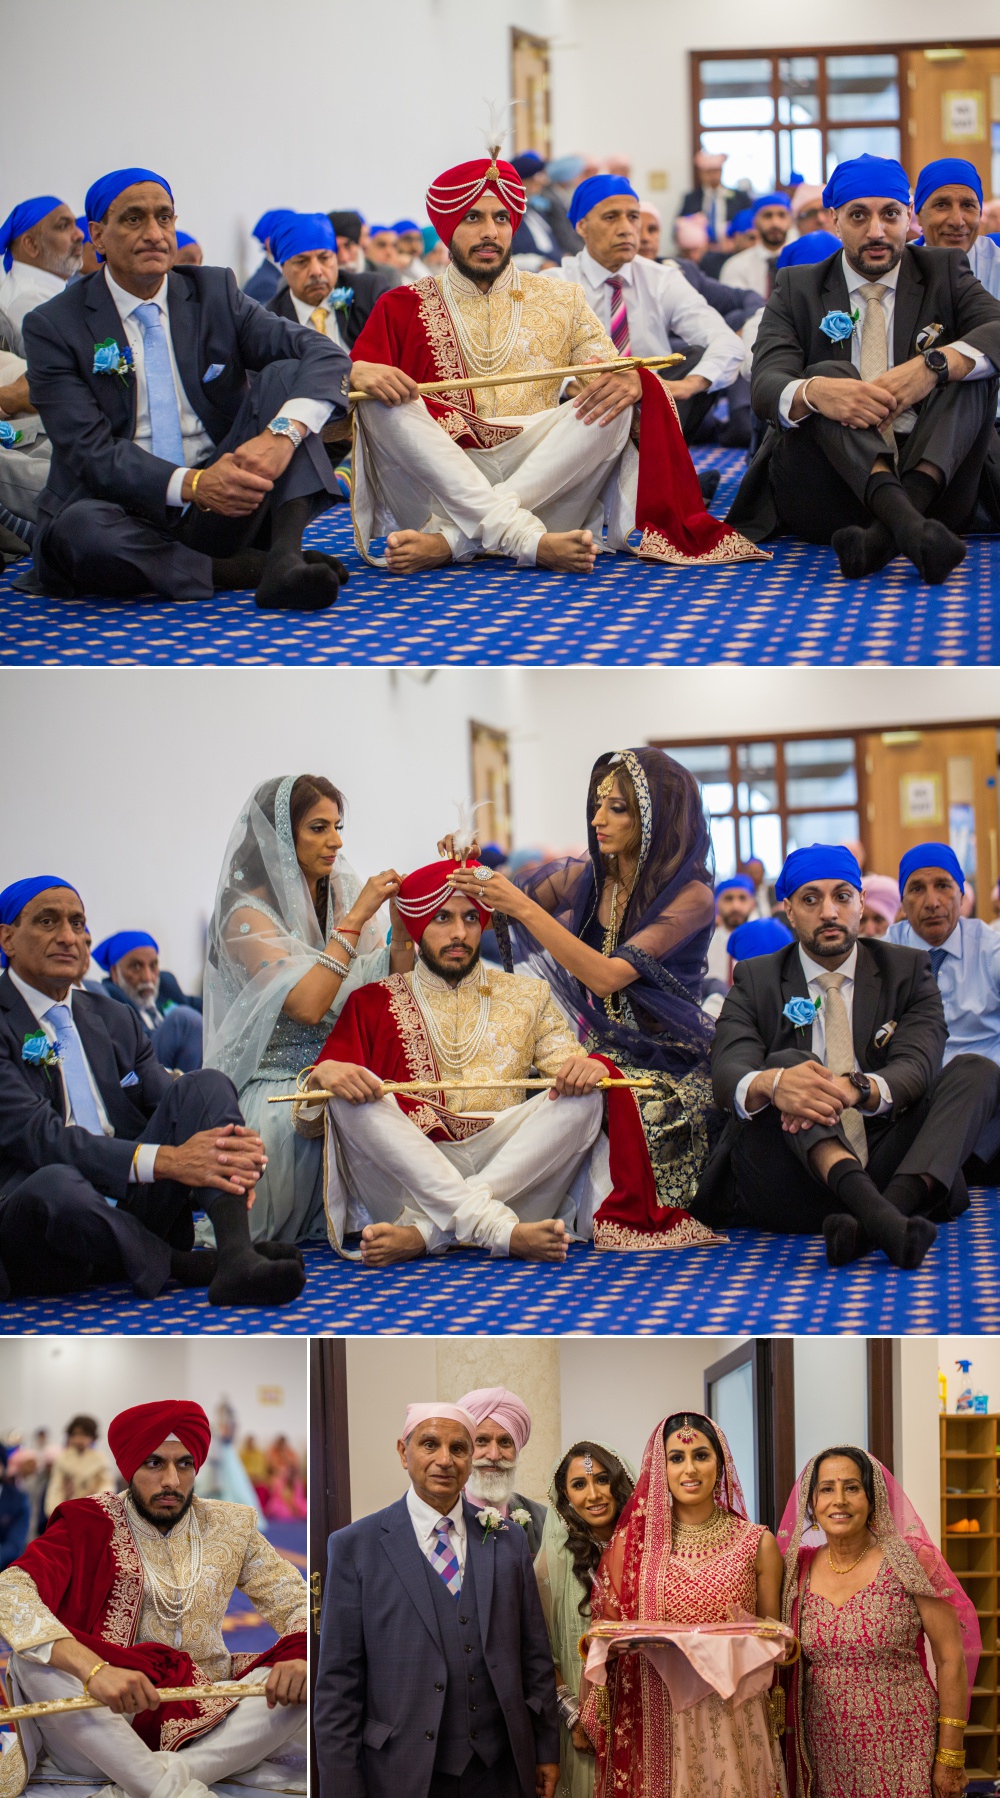 Sikh Wedding Photography at Nailcote Hall Bally and Sukhpreet 14 1